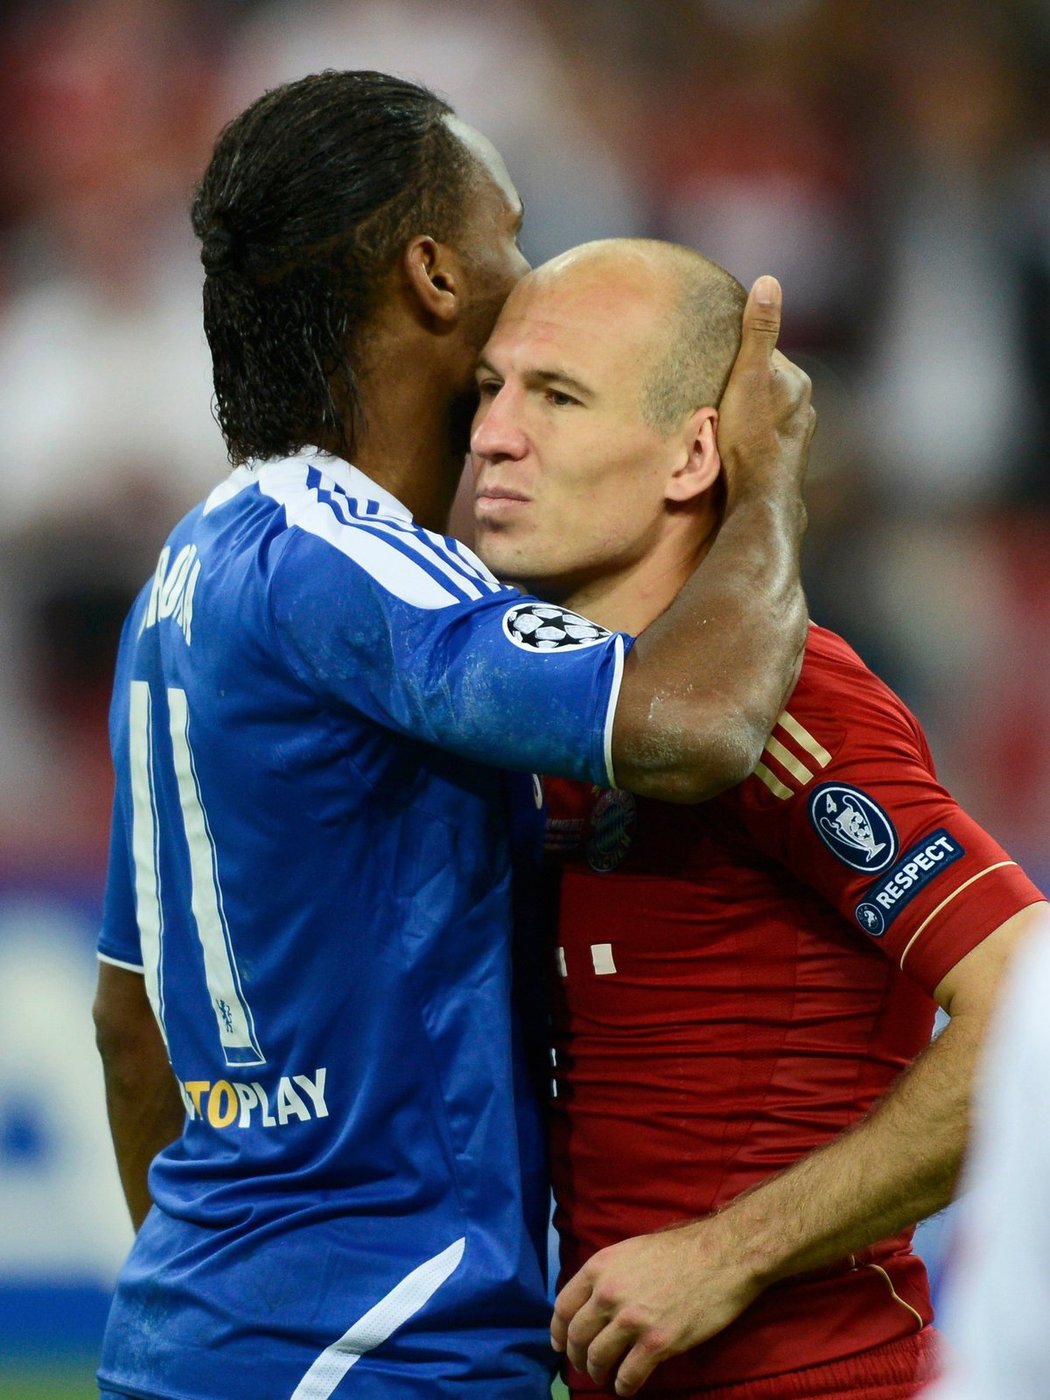 Zklamaného Robbena po finále Ligy mistrů utěšoval hrdina Chelsea Didier Drogba